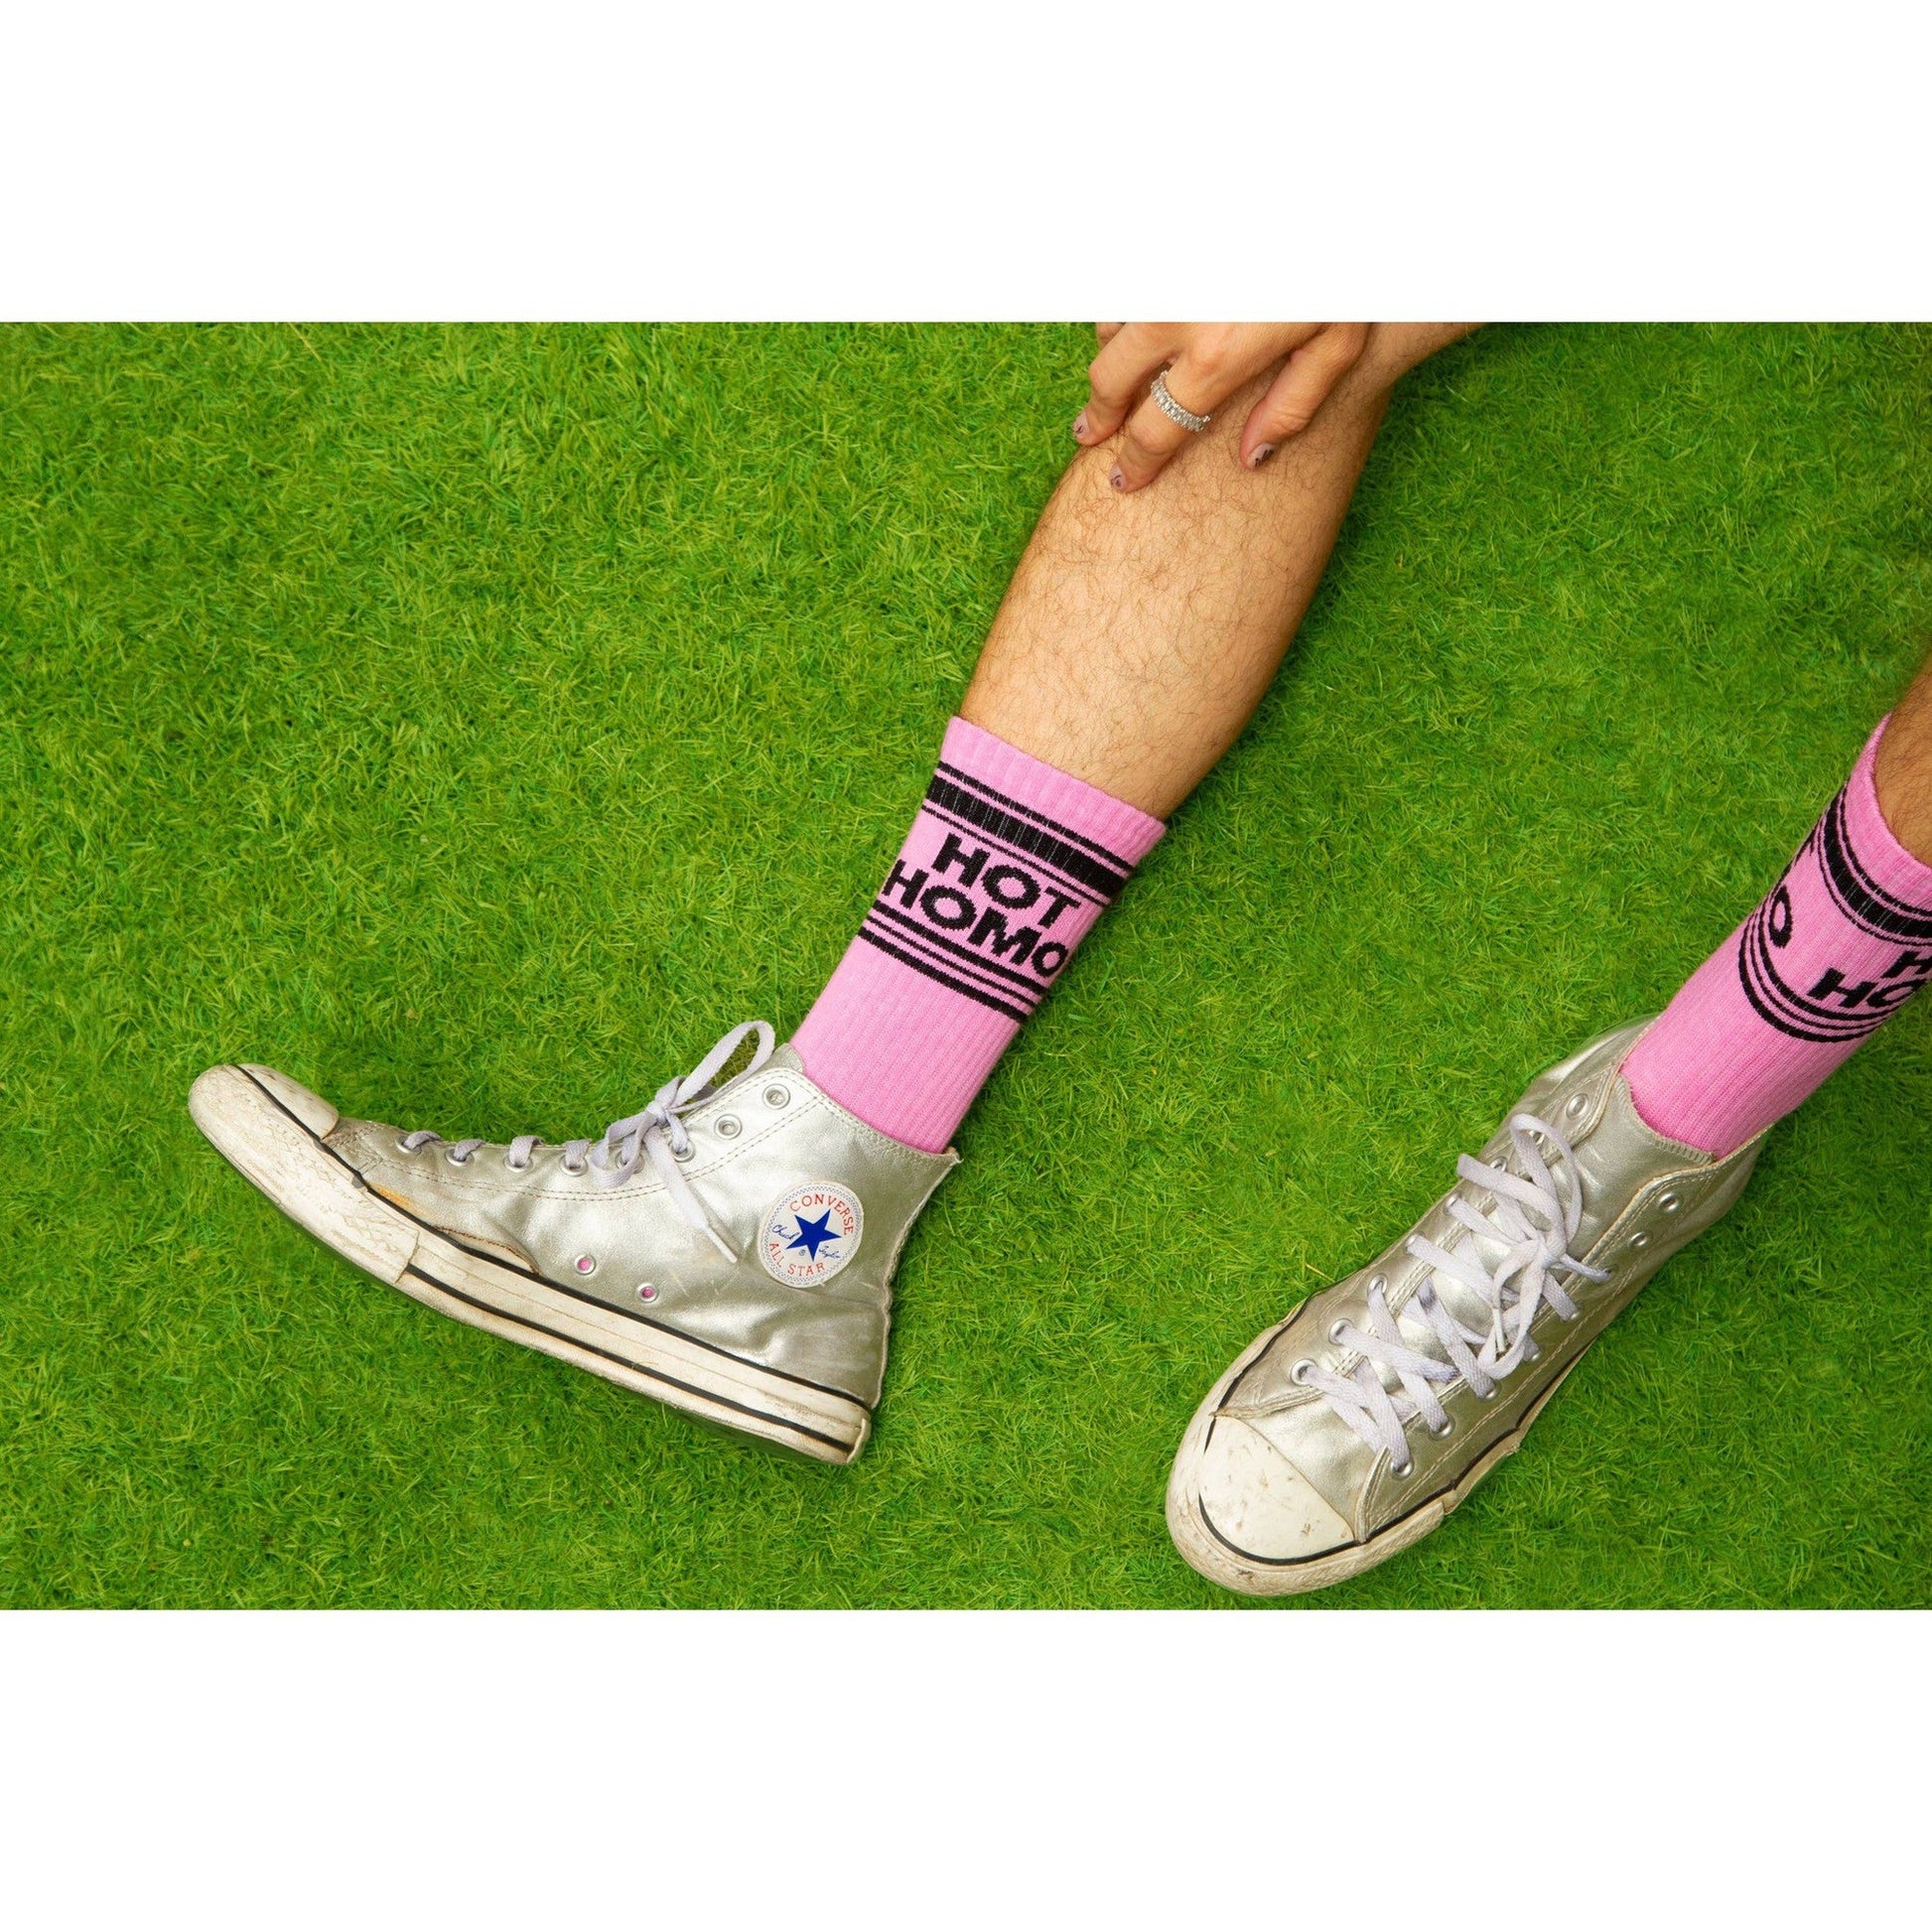 Hot Homo Gym Socks | Unisex Women's Men's